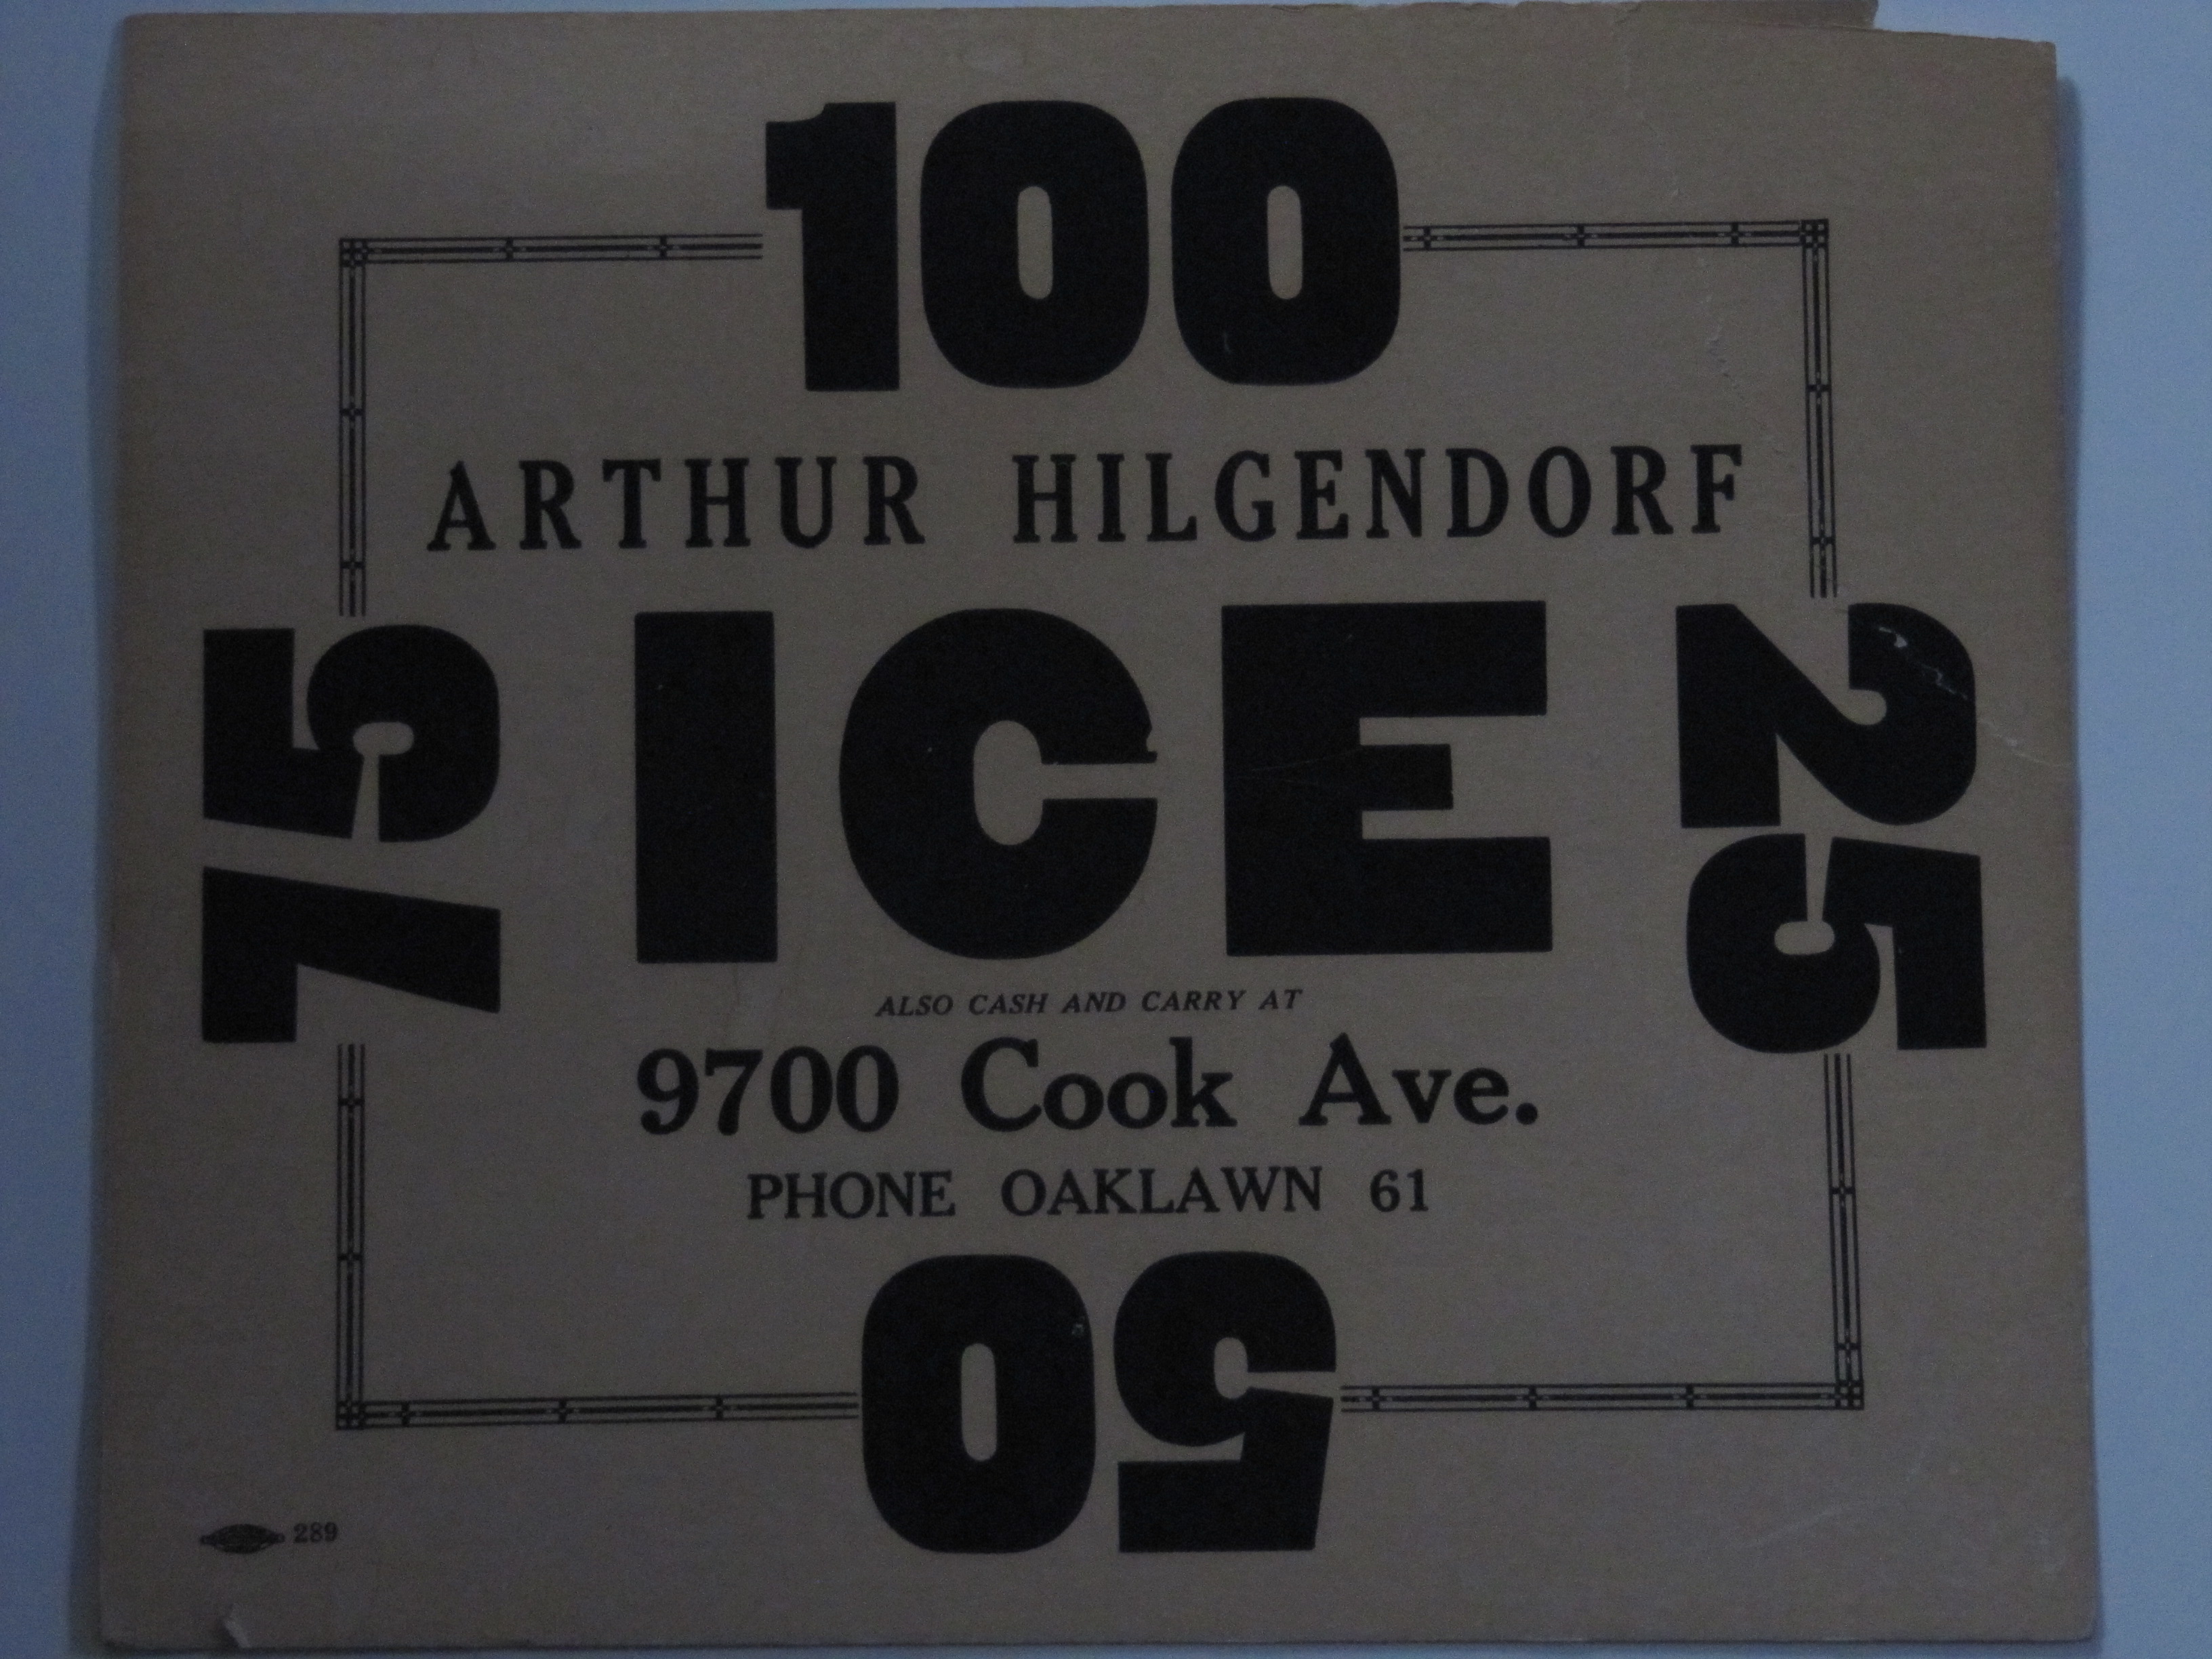 Arthur Hilgendorf Ice